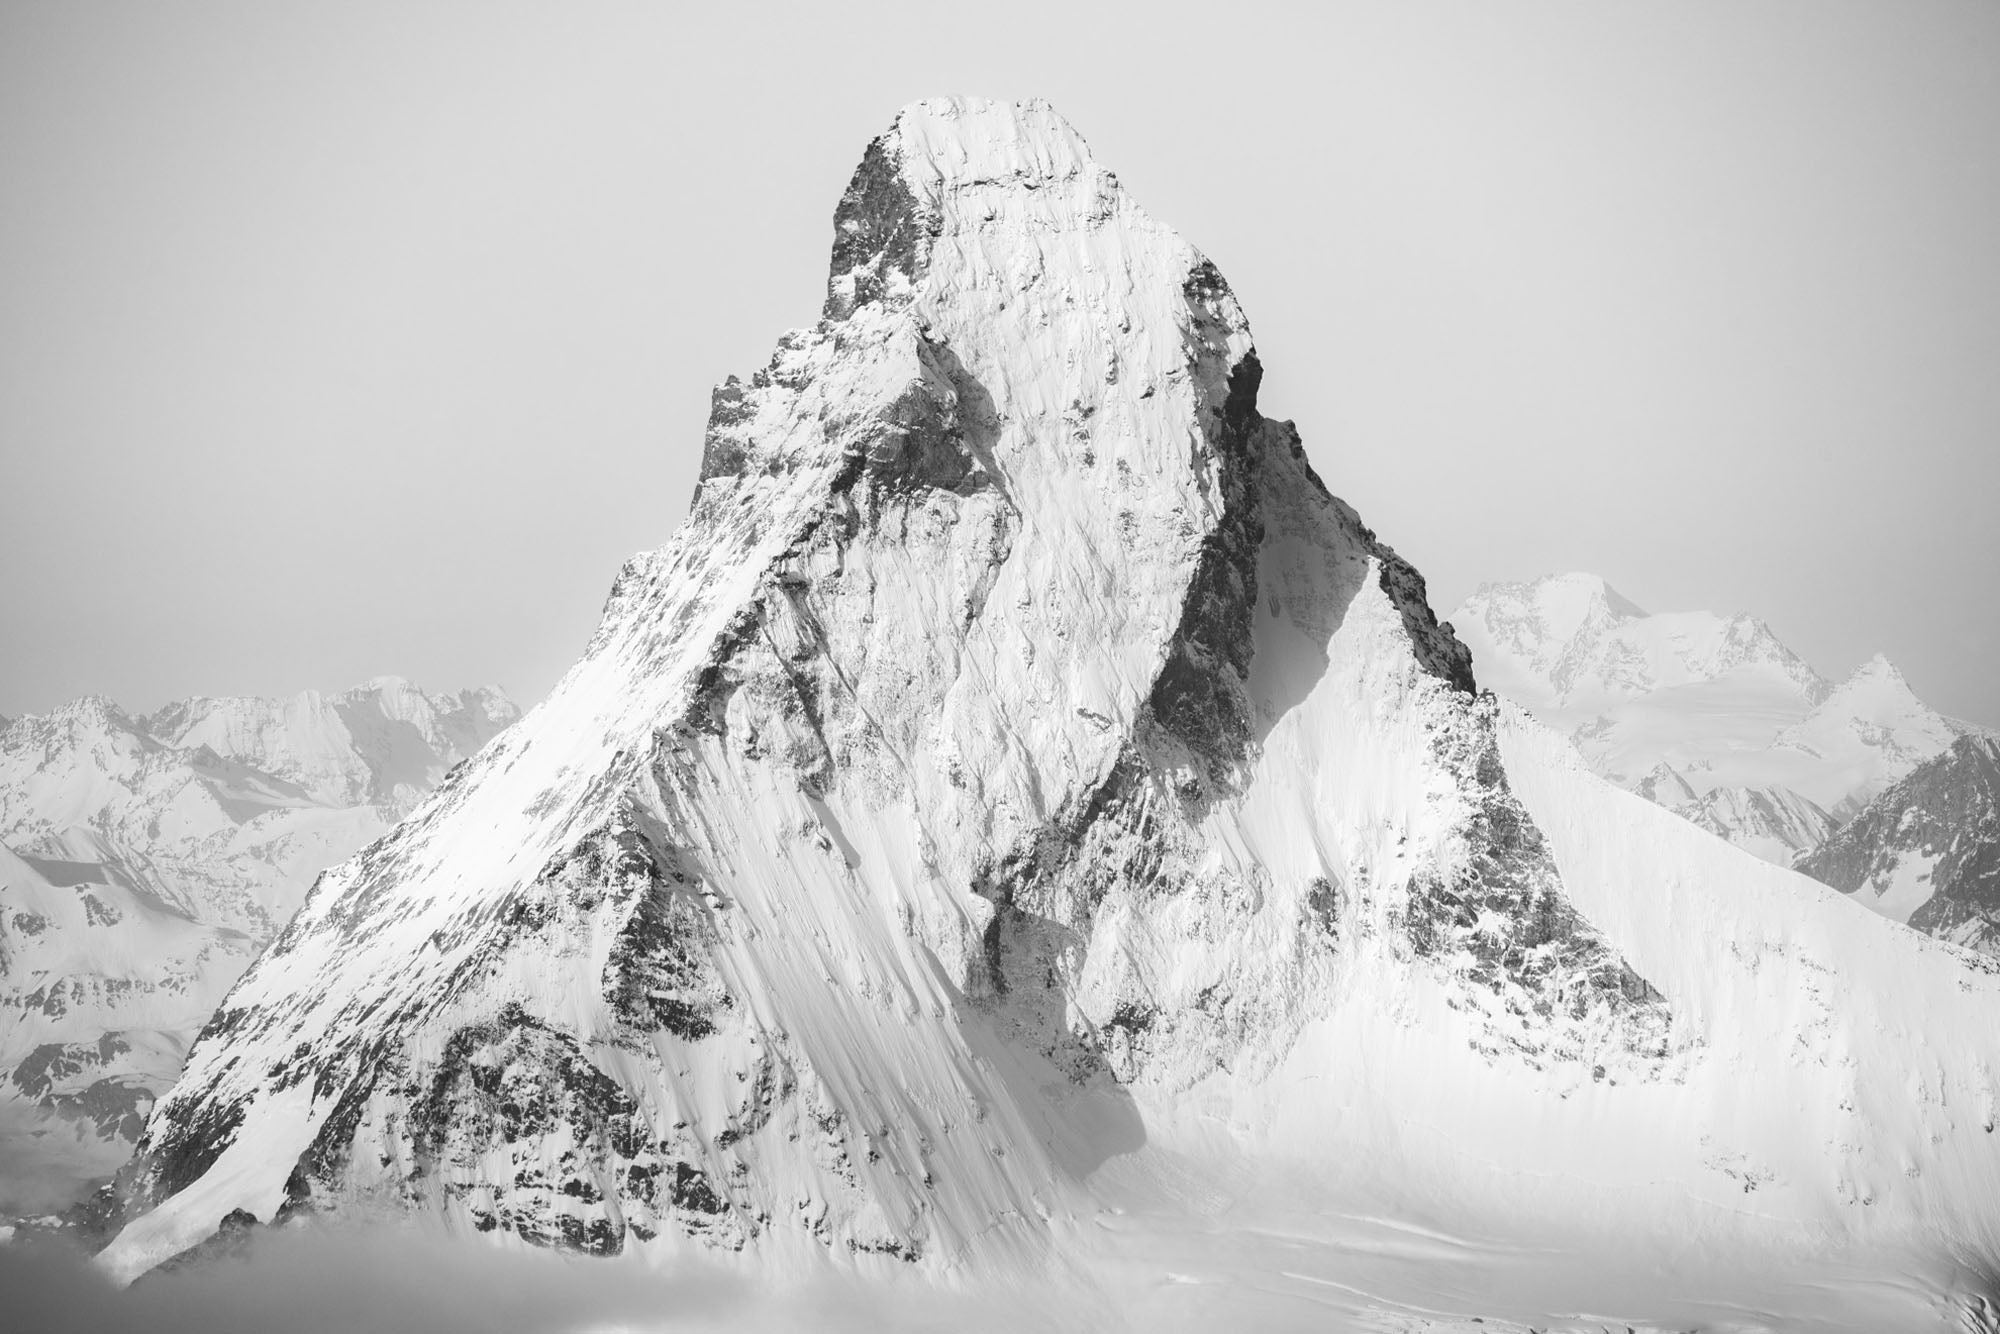 Matterhorn No. 3, Switzerland.